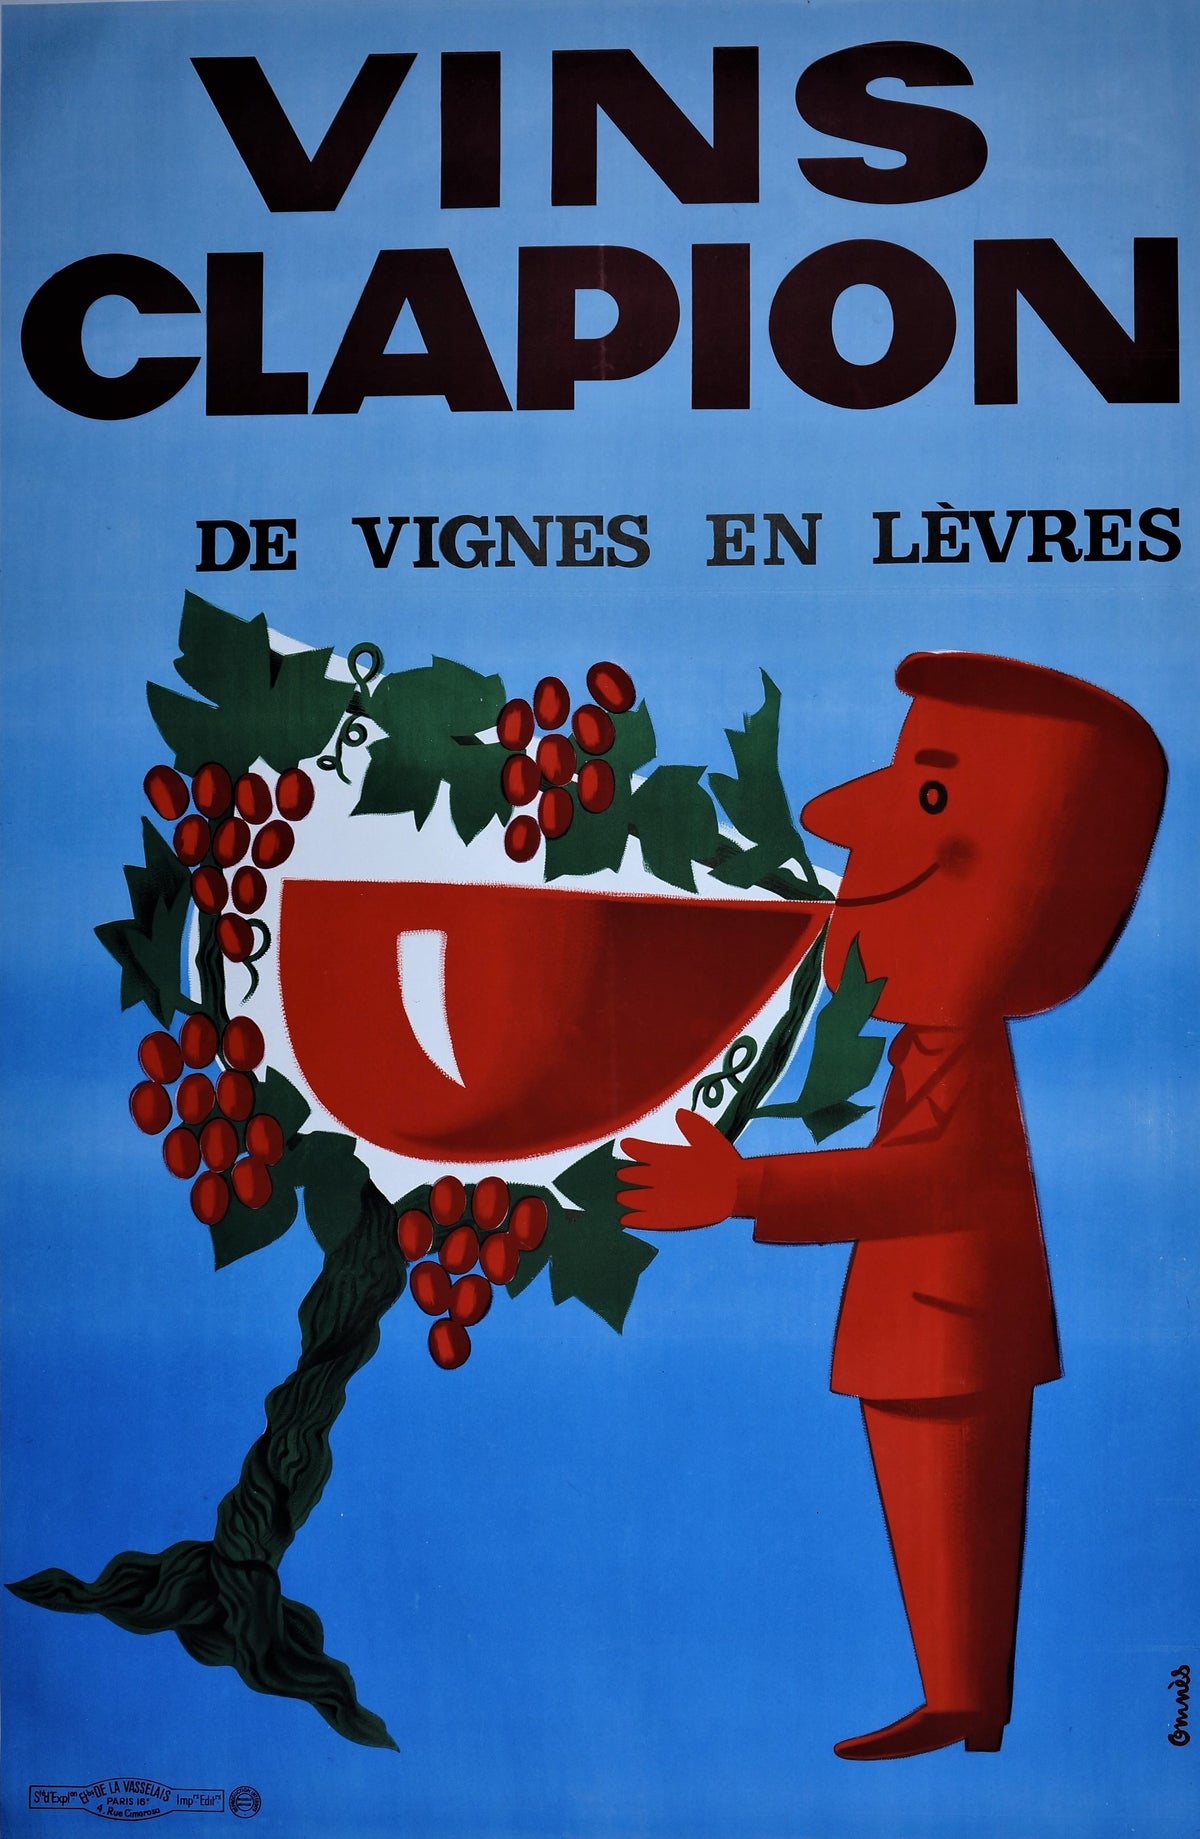 Vins Clapion - Authentic Vintage Poster